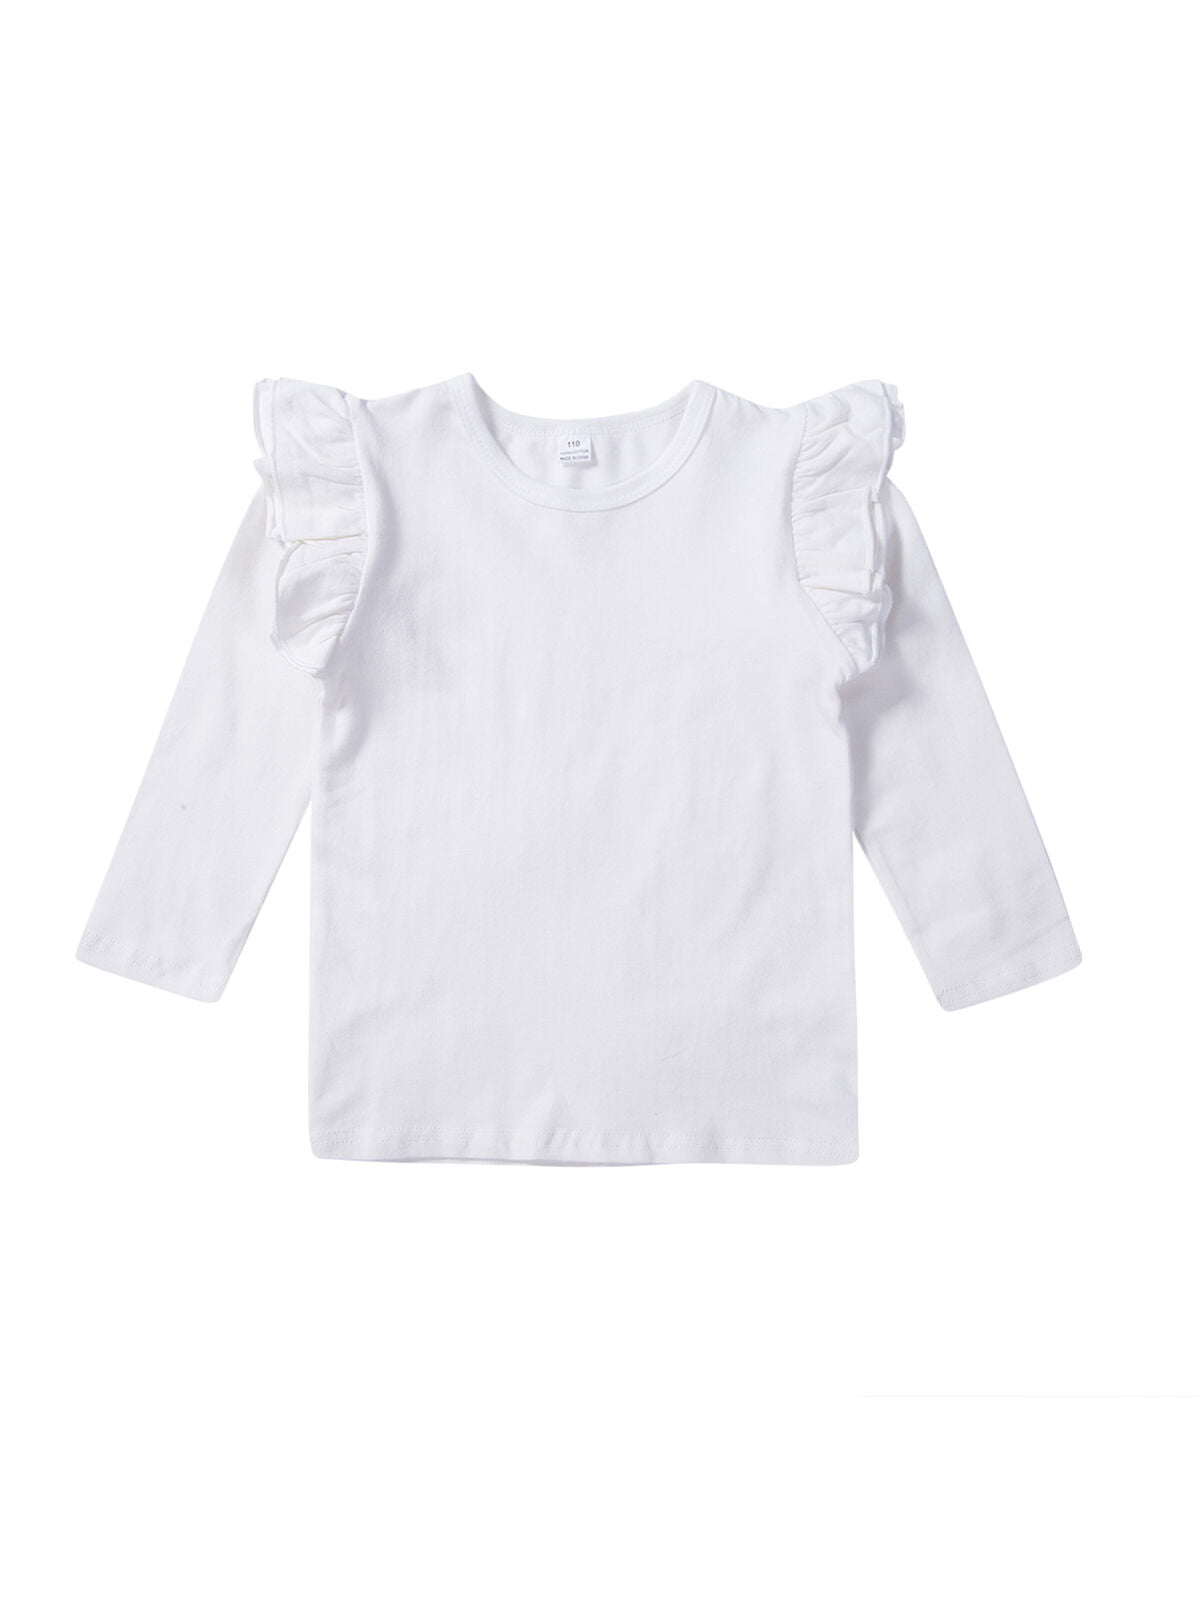 Toddler Girl Tops Long Sleeve T-Shirt Dress Kids Baby Children Blouses Oufits G1 